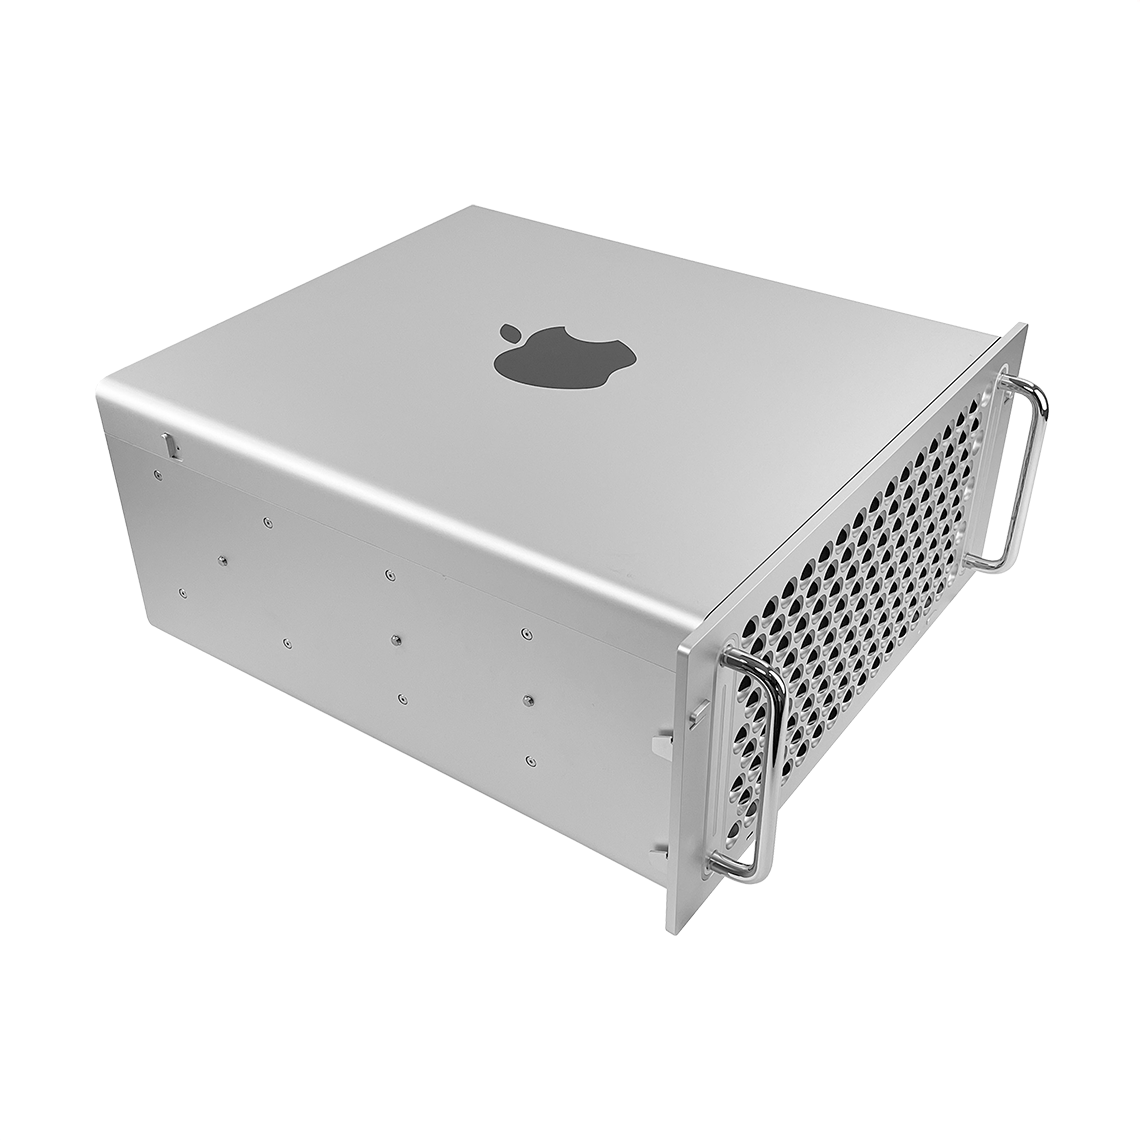 Apple 2019 Mac Pro - Intel Xeon 16-Core, 384GB RAM, 2TB Flash, AMD Radeon Pro Vega II Duo 64GB, Rack Mount, Grade A